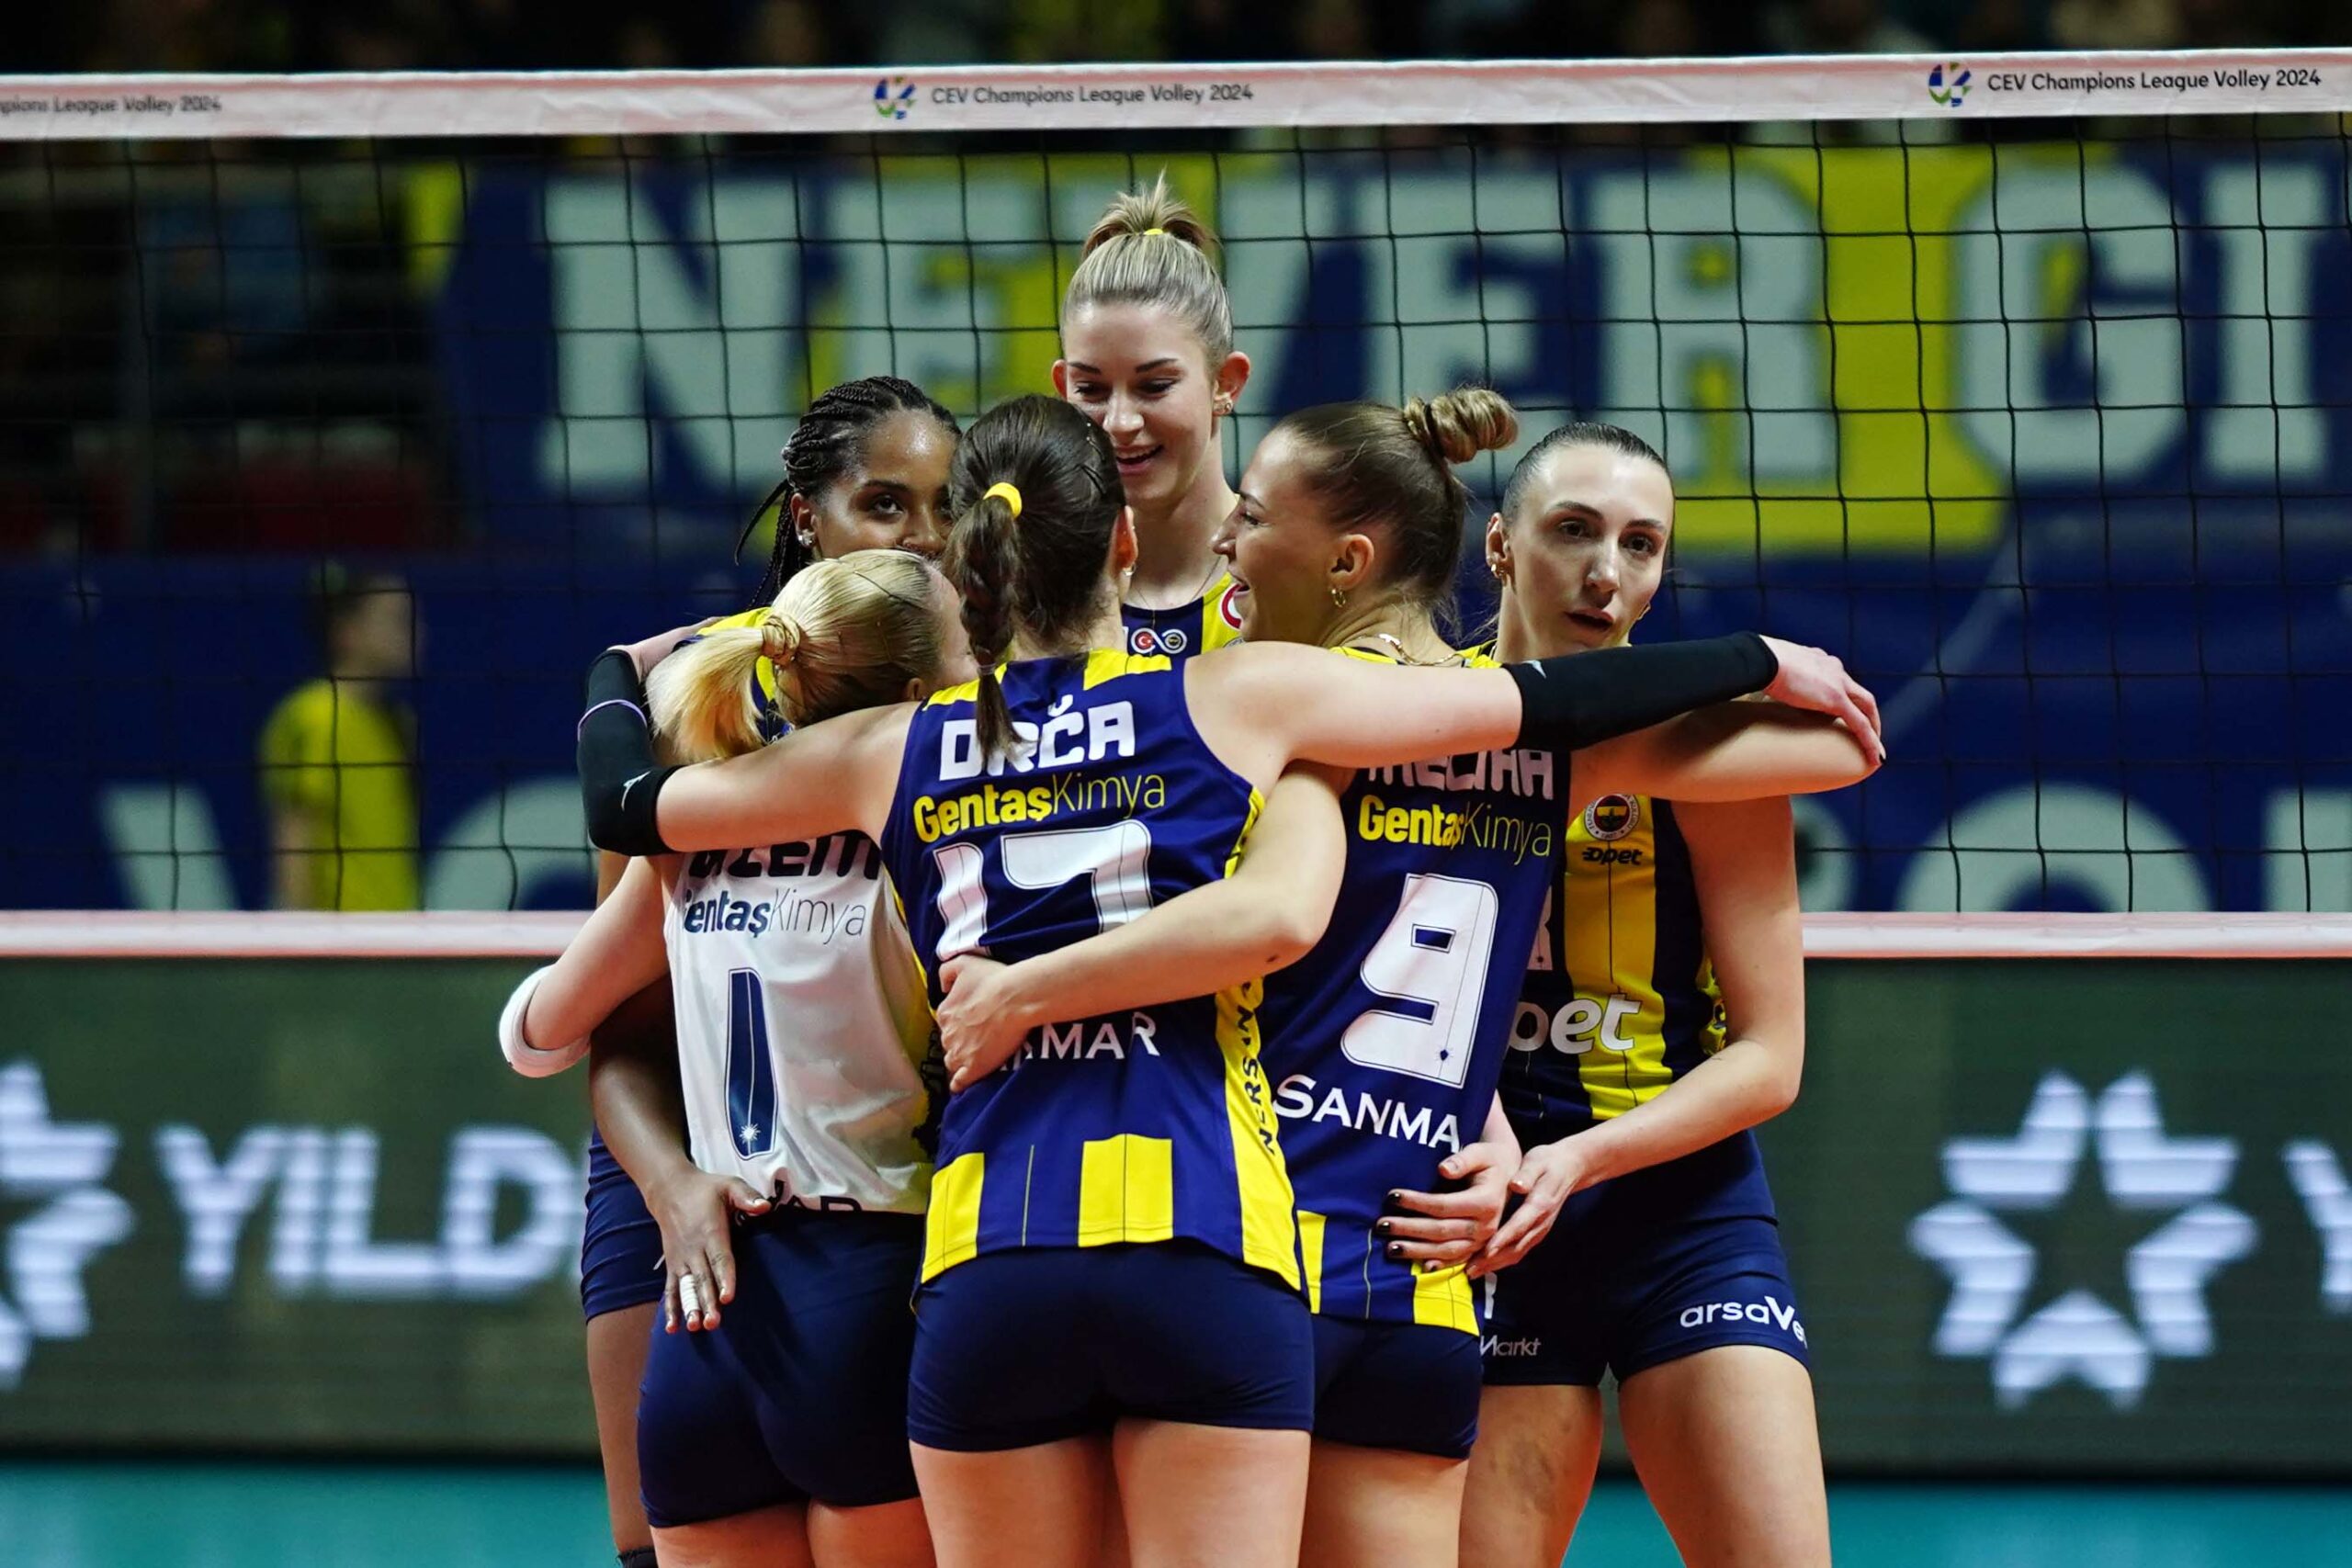 Fenerbahçe Opet, CEV Şampiyonlar Ligi’nde çeyrek finale yükselmeyi başardı.